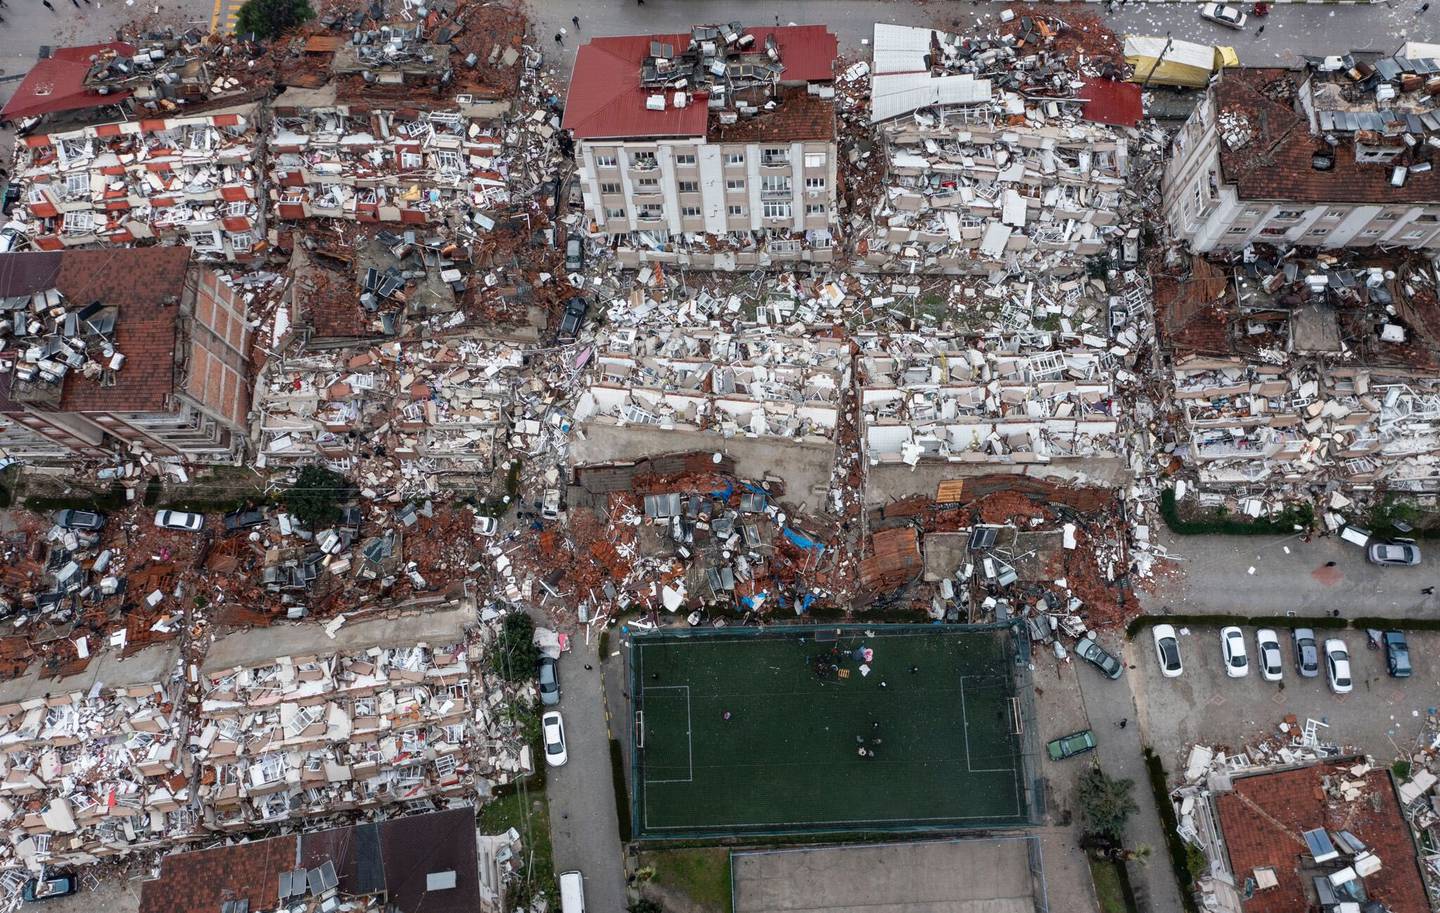 Imagen de Turquía tras los terremotosdfd